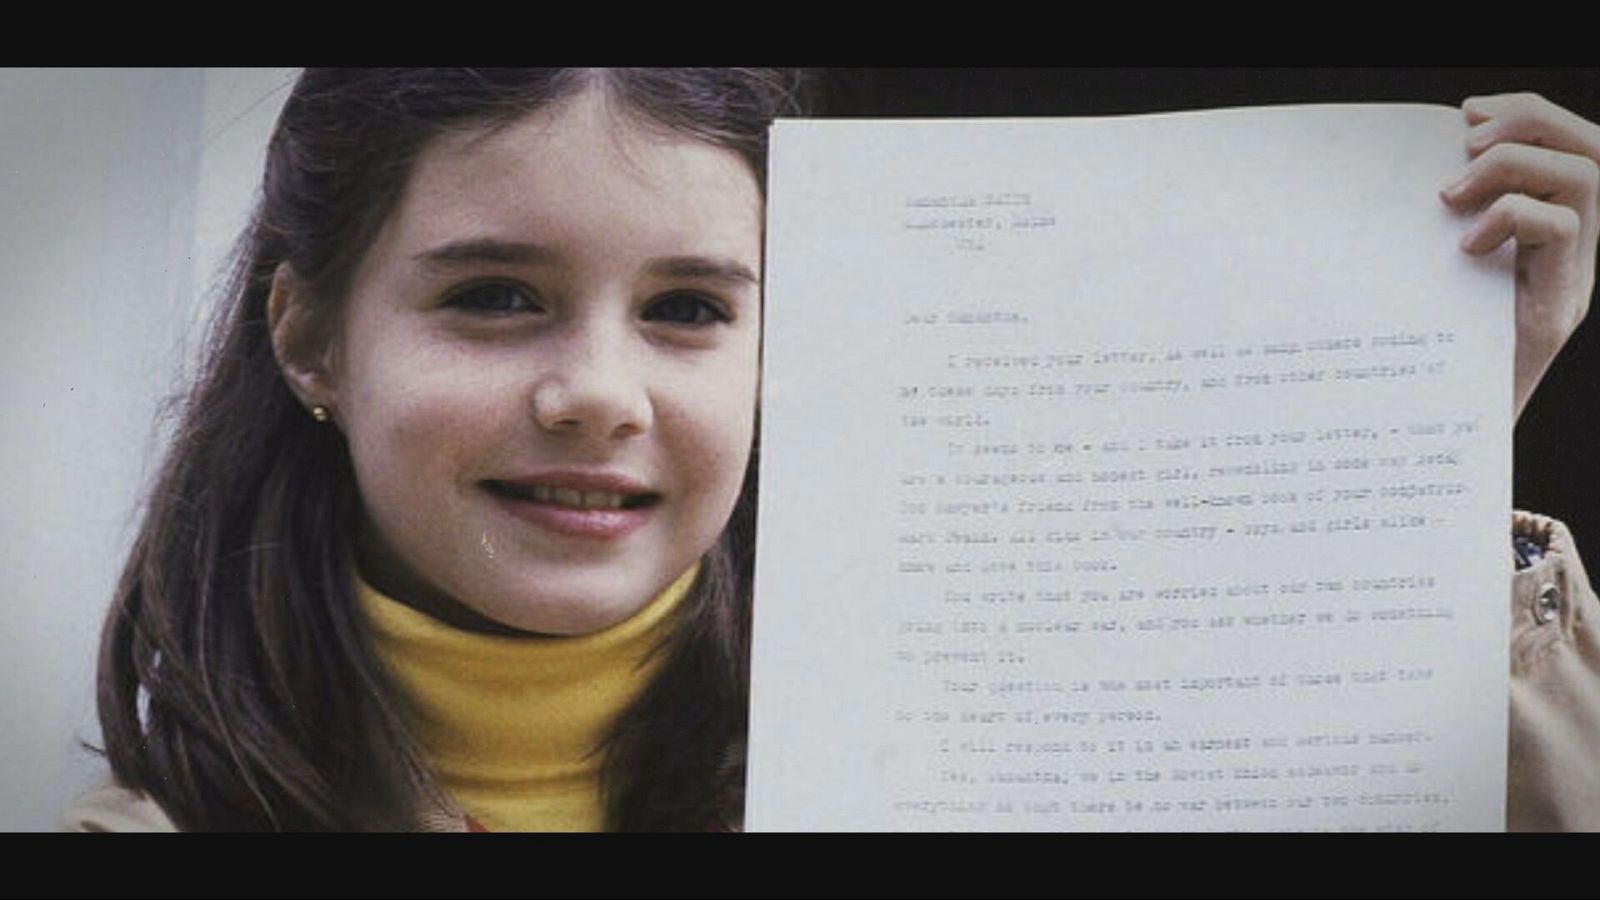 El 28 de abril de 1983, Samantha recibió una carta procedente del Kremlin y firmada por el líder soviético, Yuri Andropov